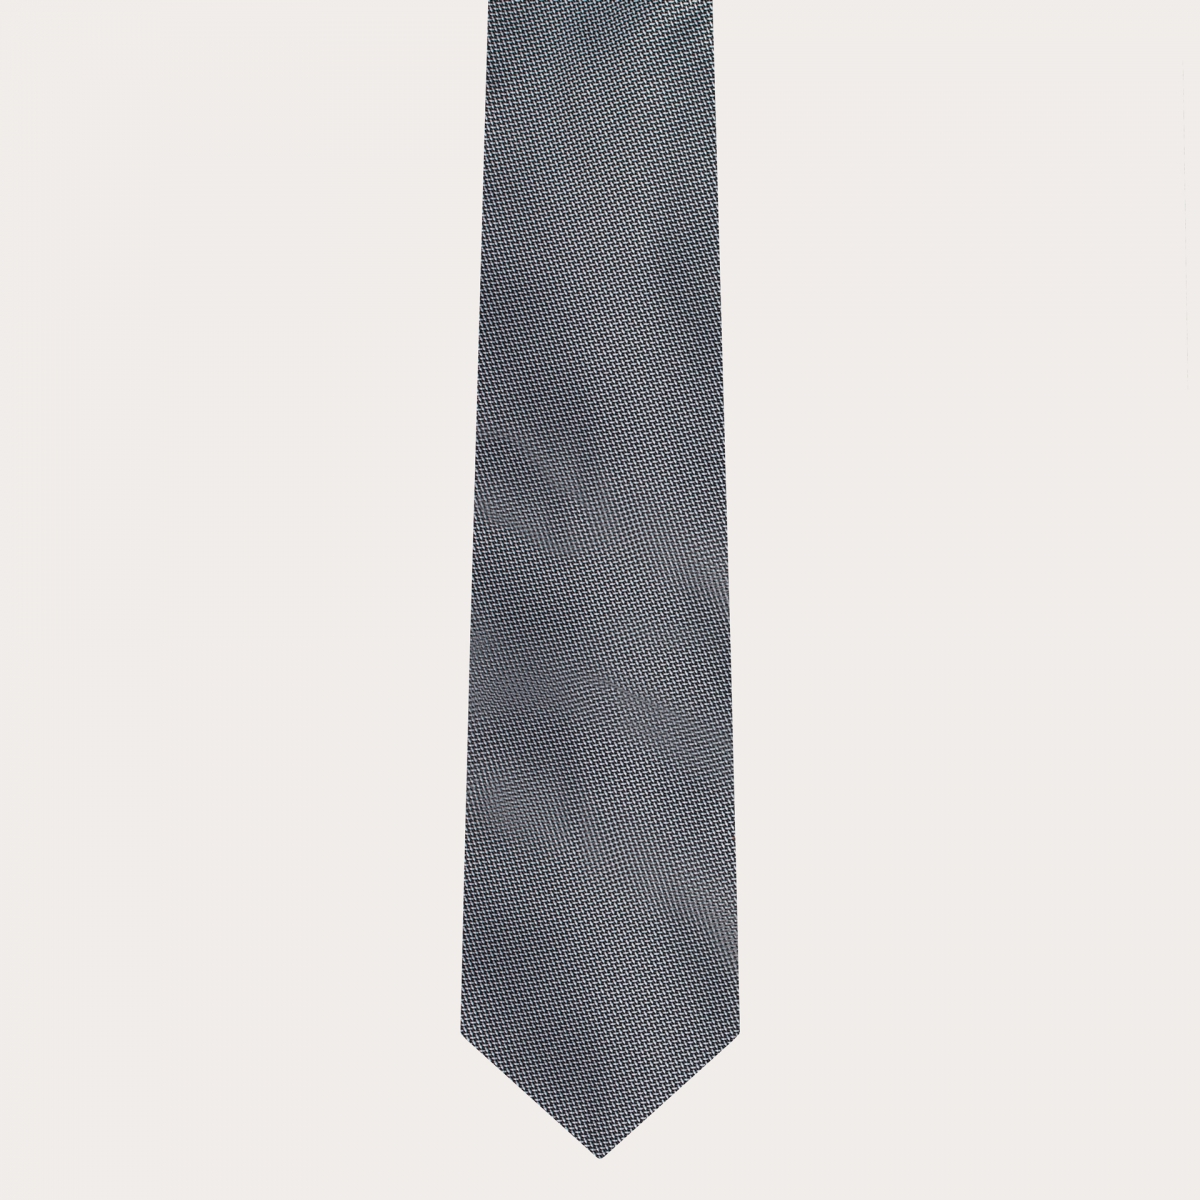 BRUCLE Ensemble coordonné bretelles fines et cravate en élégante soie à pois gris